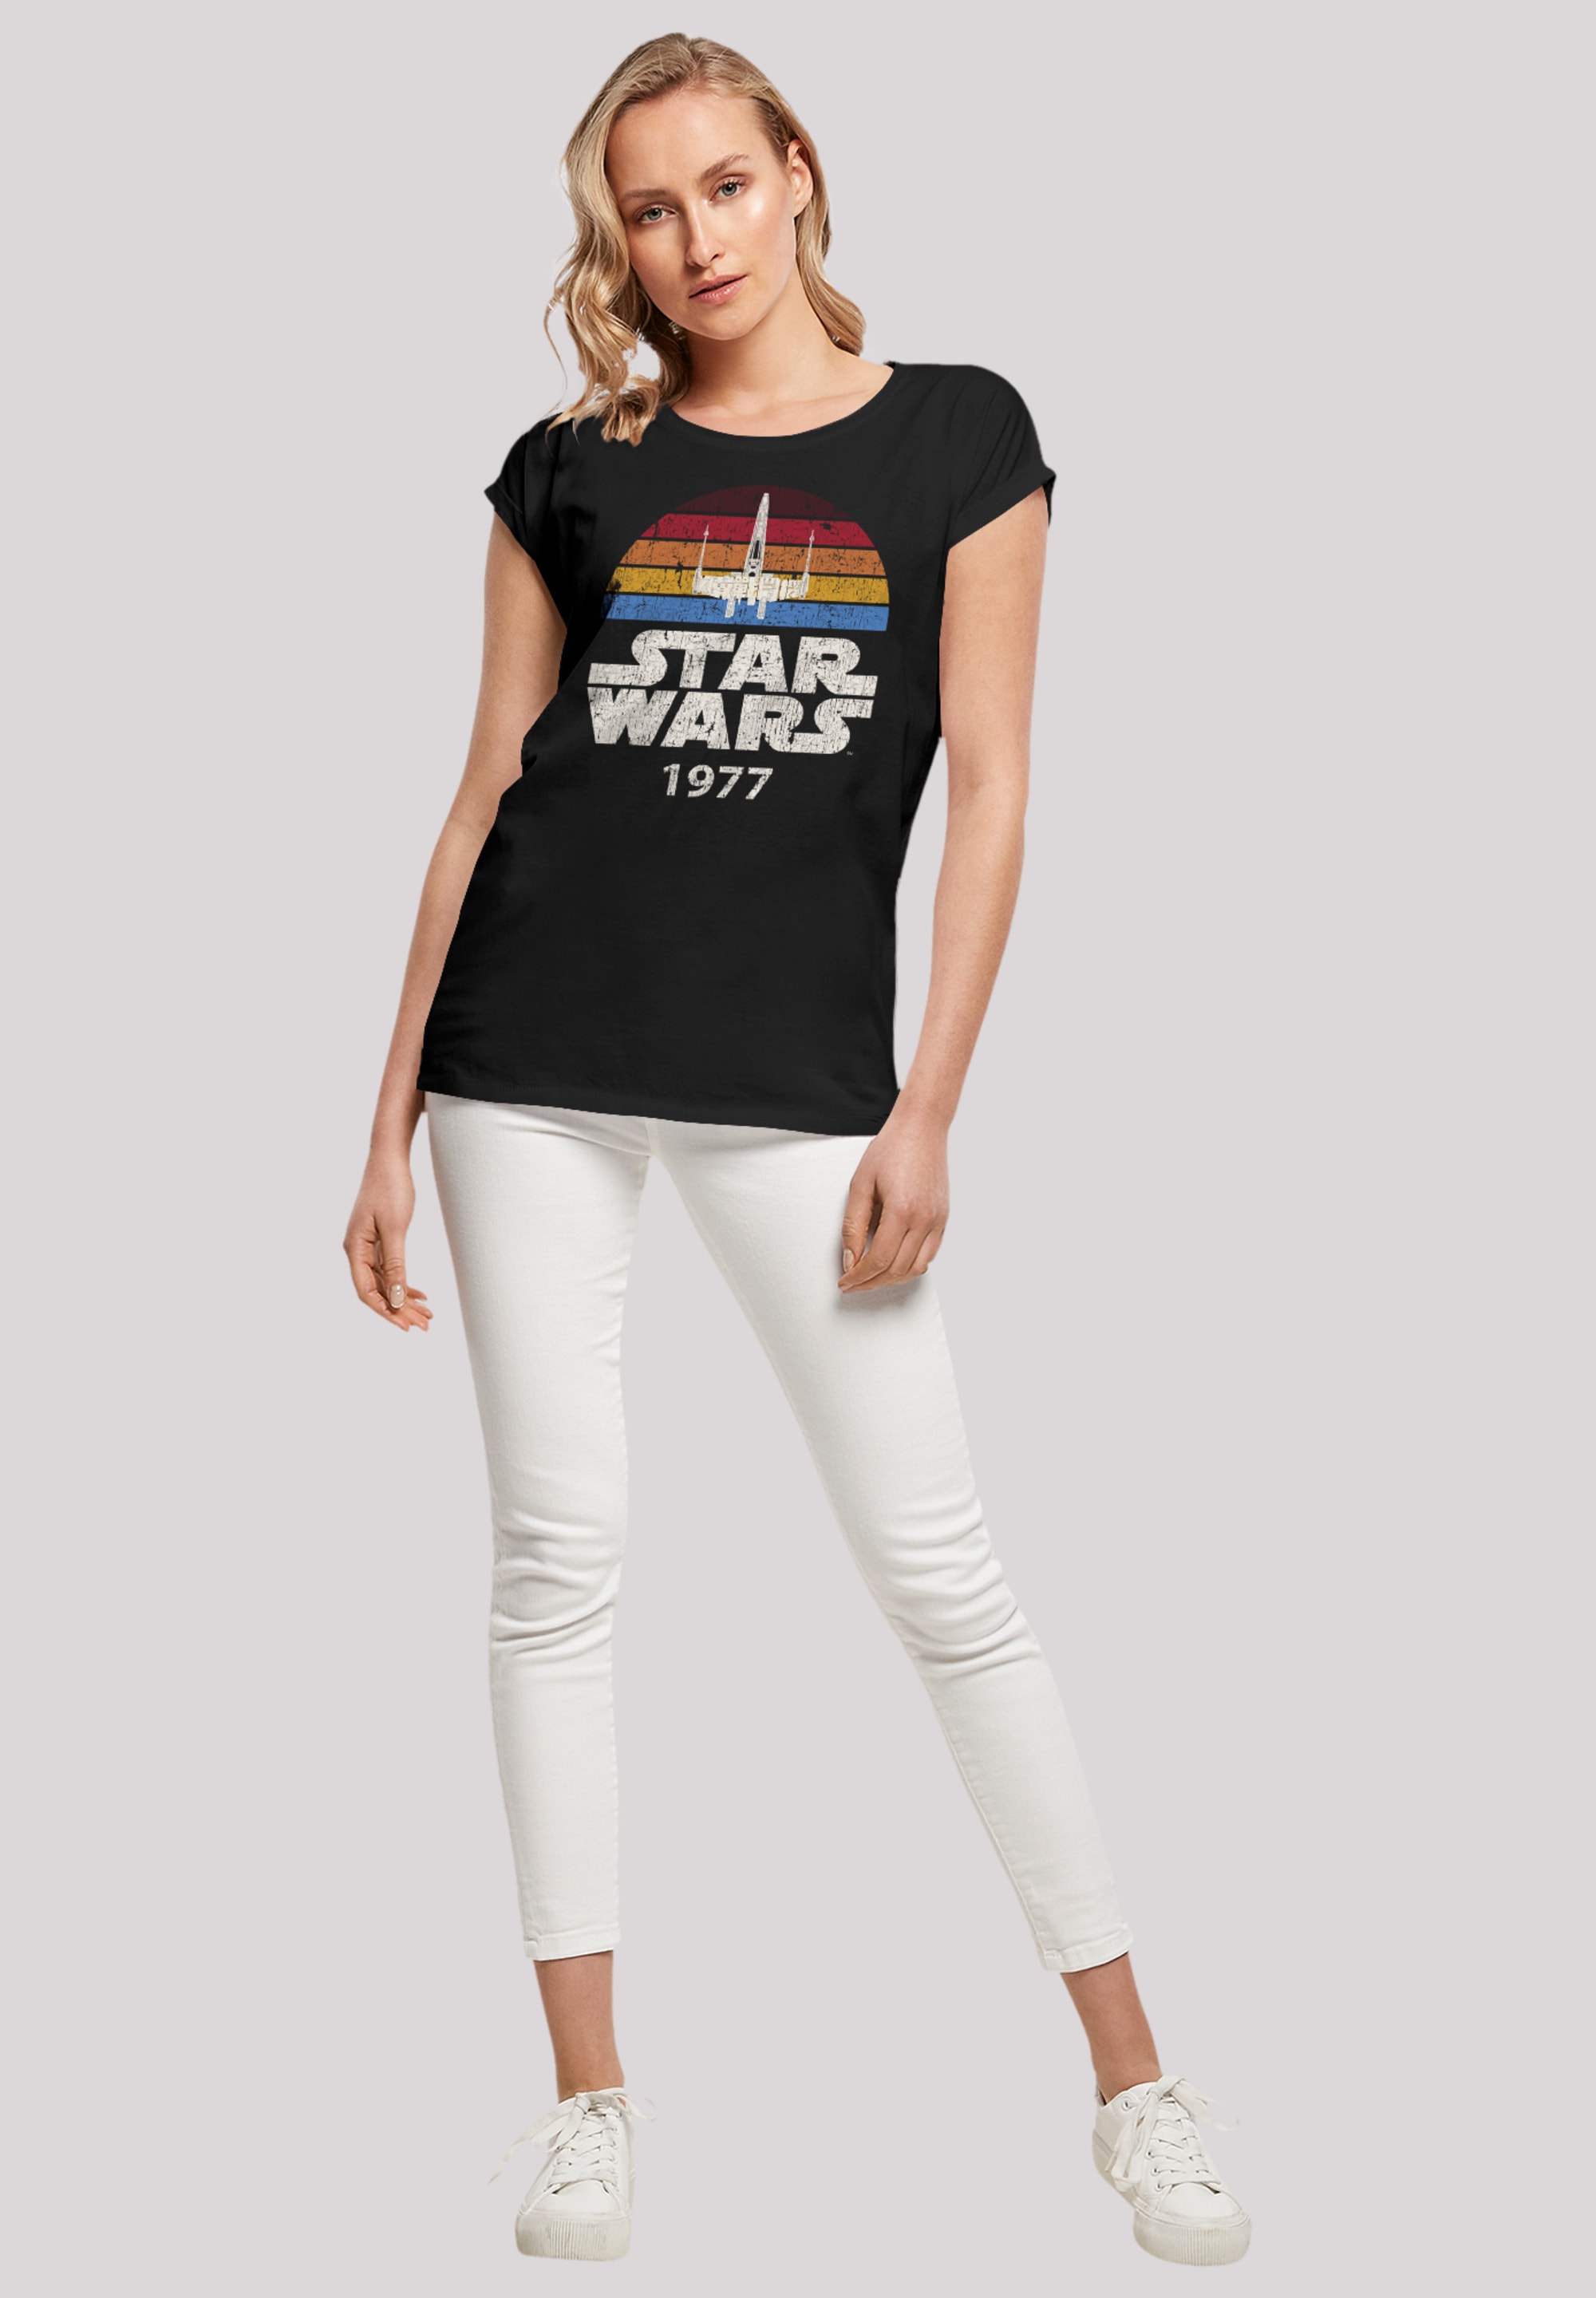 F4NT4STIC Trip walking kaufen X-Wing Qualität I\'m T-Shirt »Star online Wars Premium 1977«, |